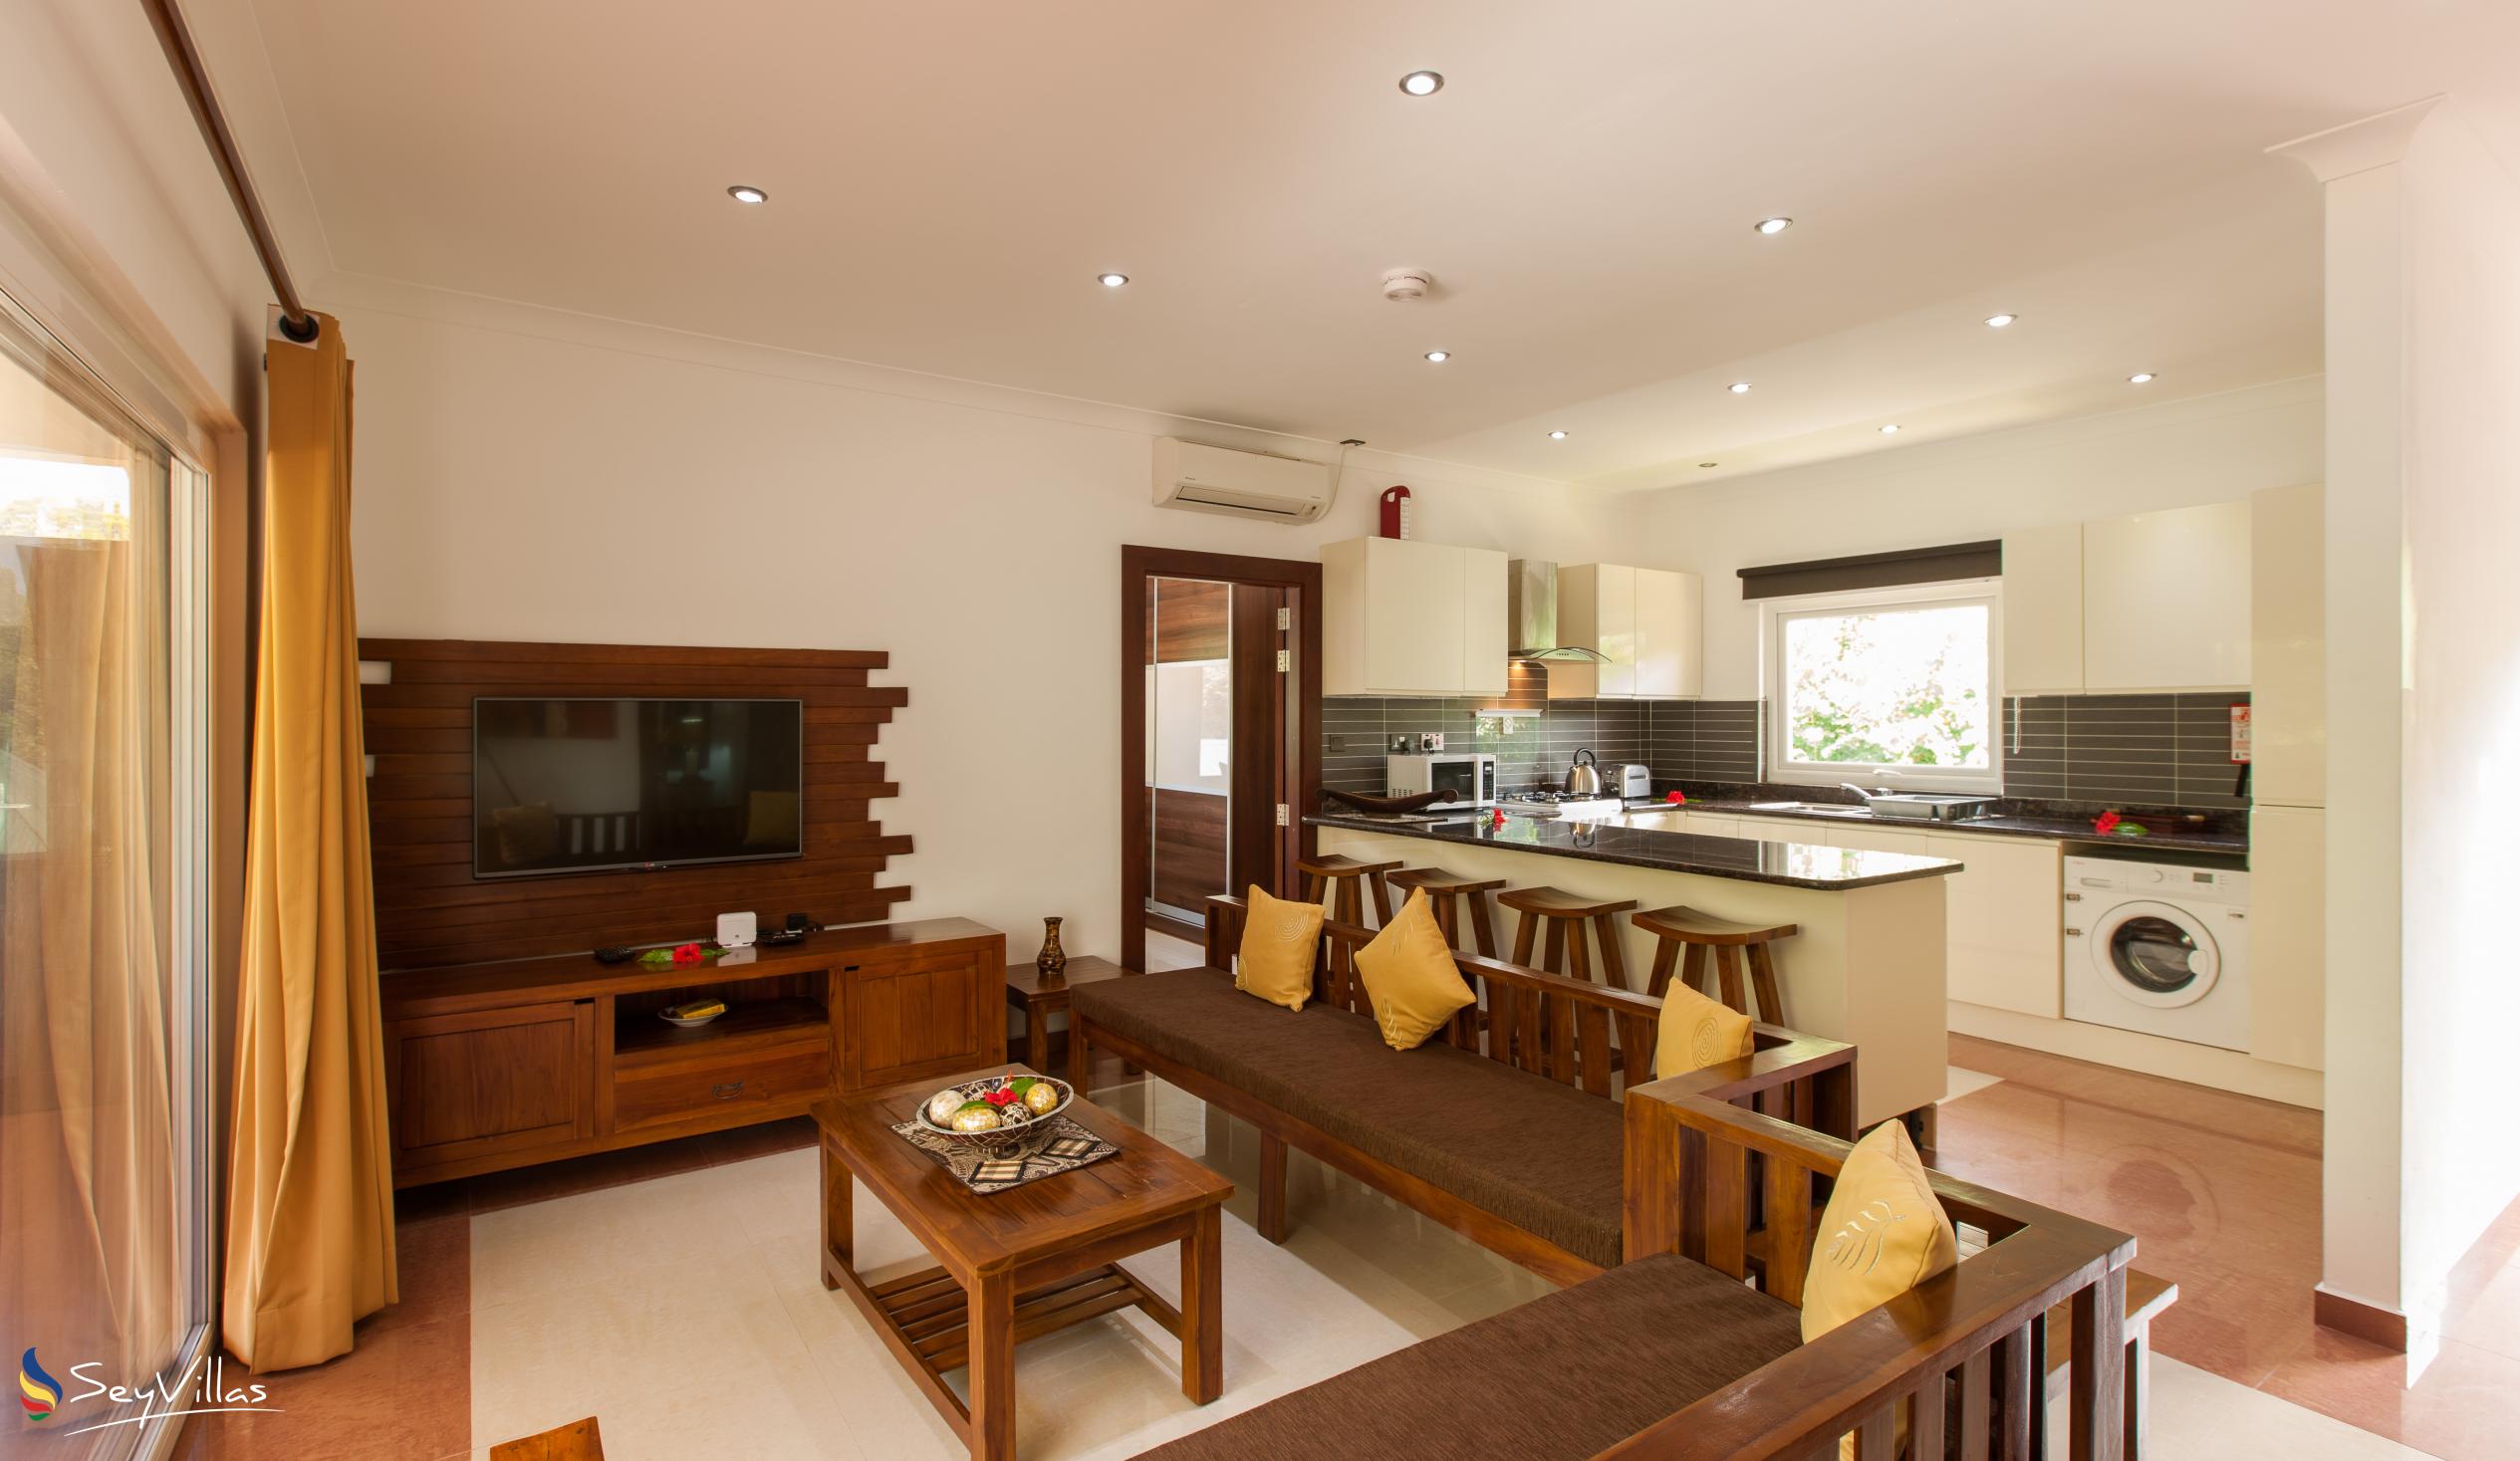 Foto 7: YASAD Luxury Beach Residence - Appartement mit 3 Schlafzimmern - Praslin (Seychellen)